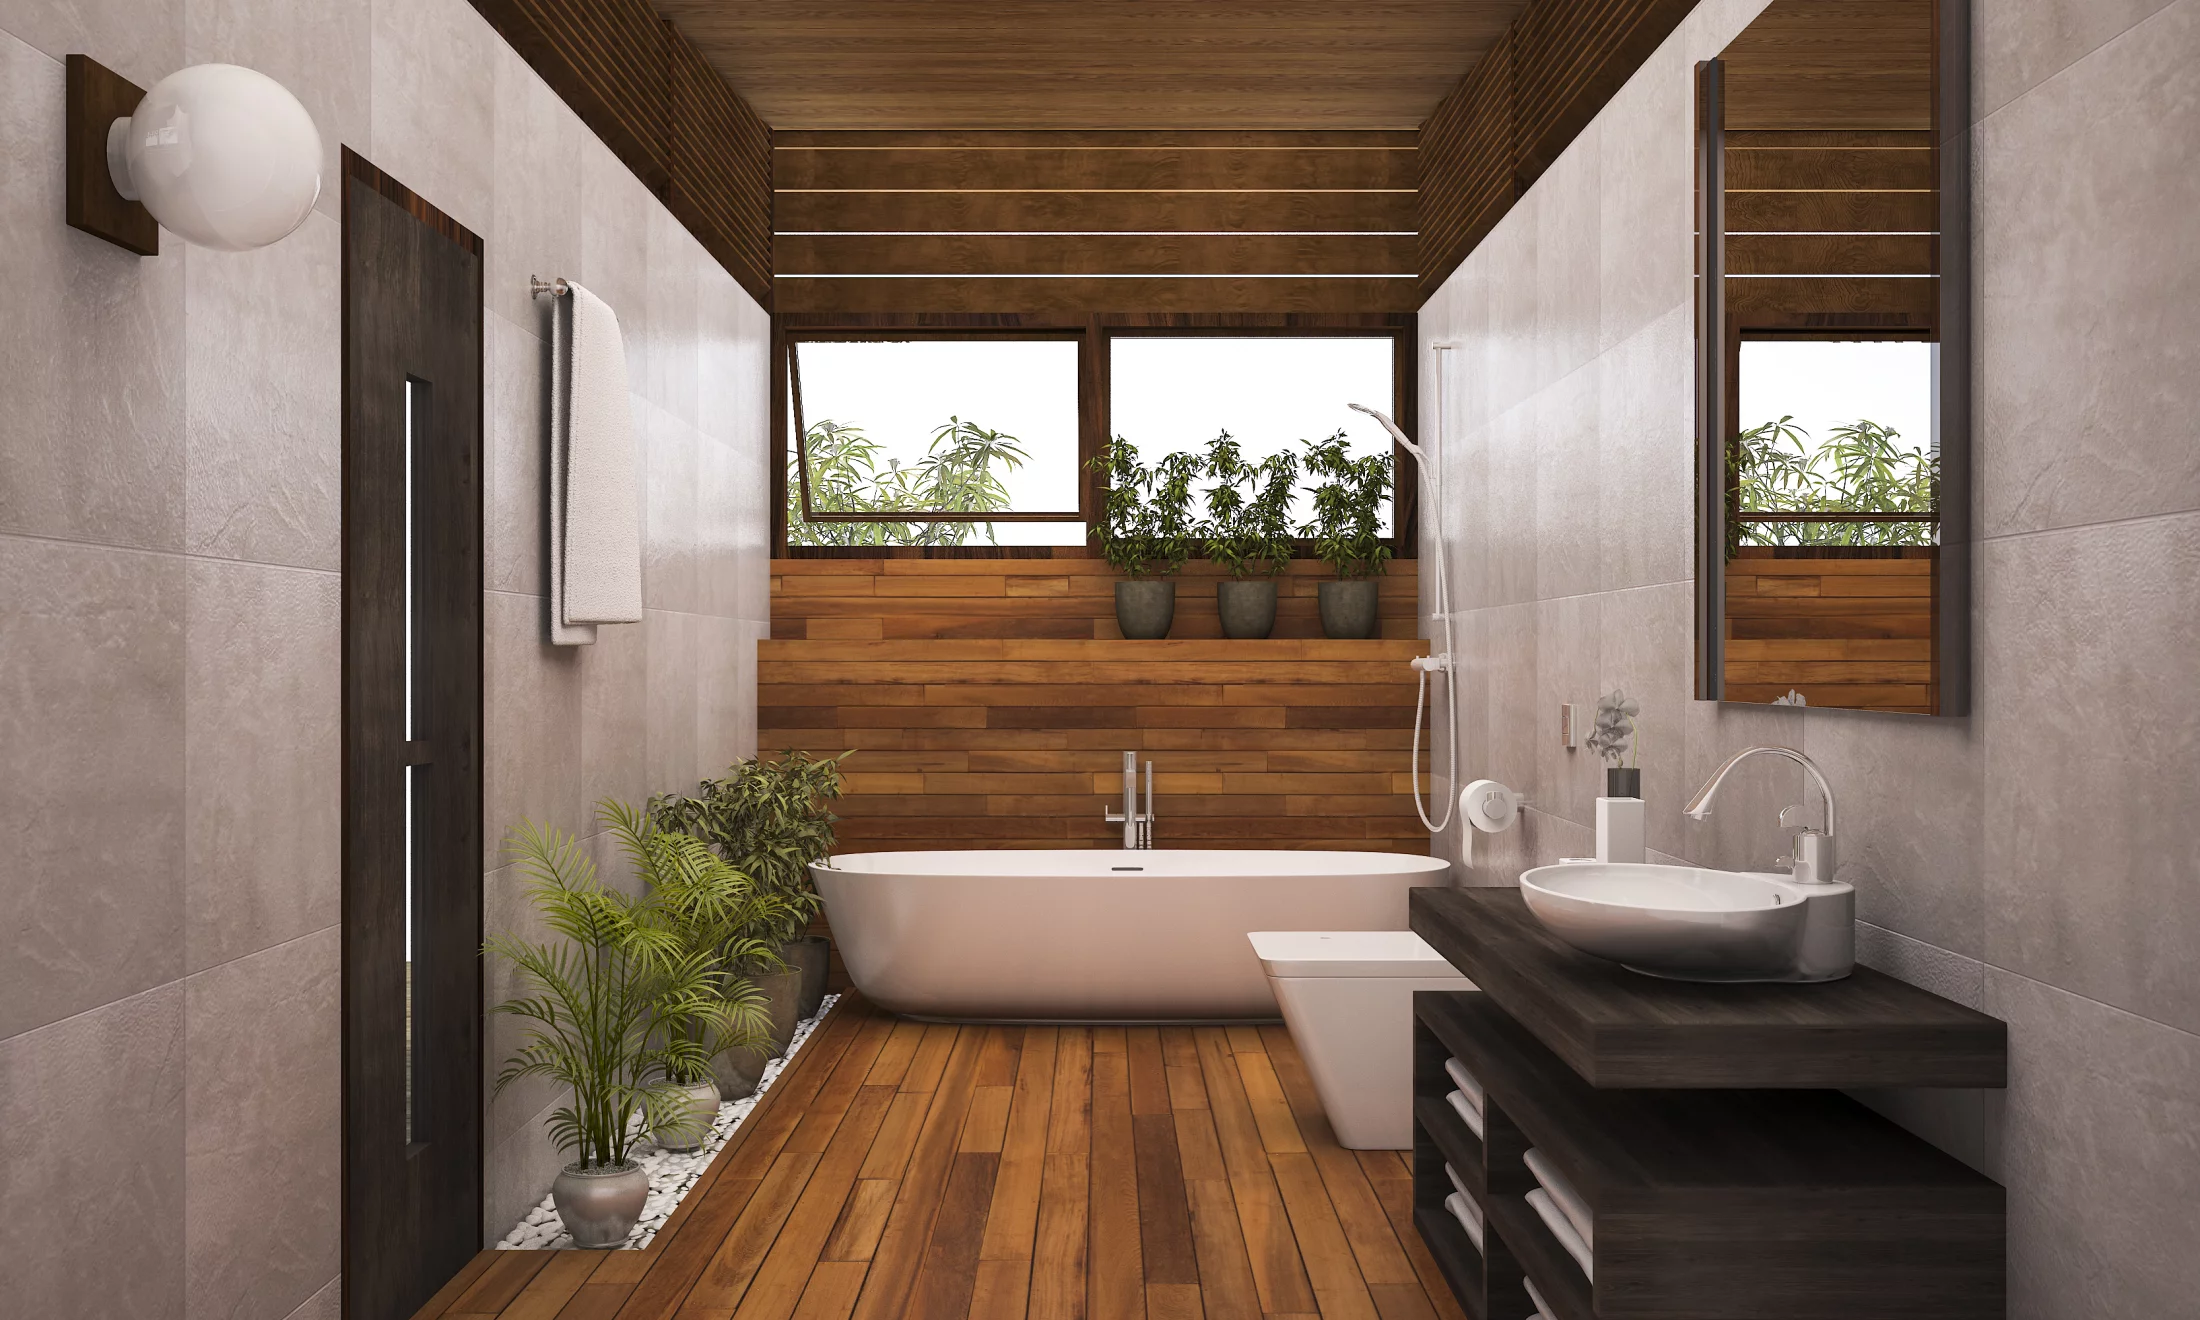 Bathroom with wooden floor